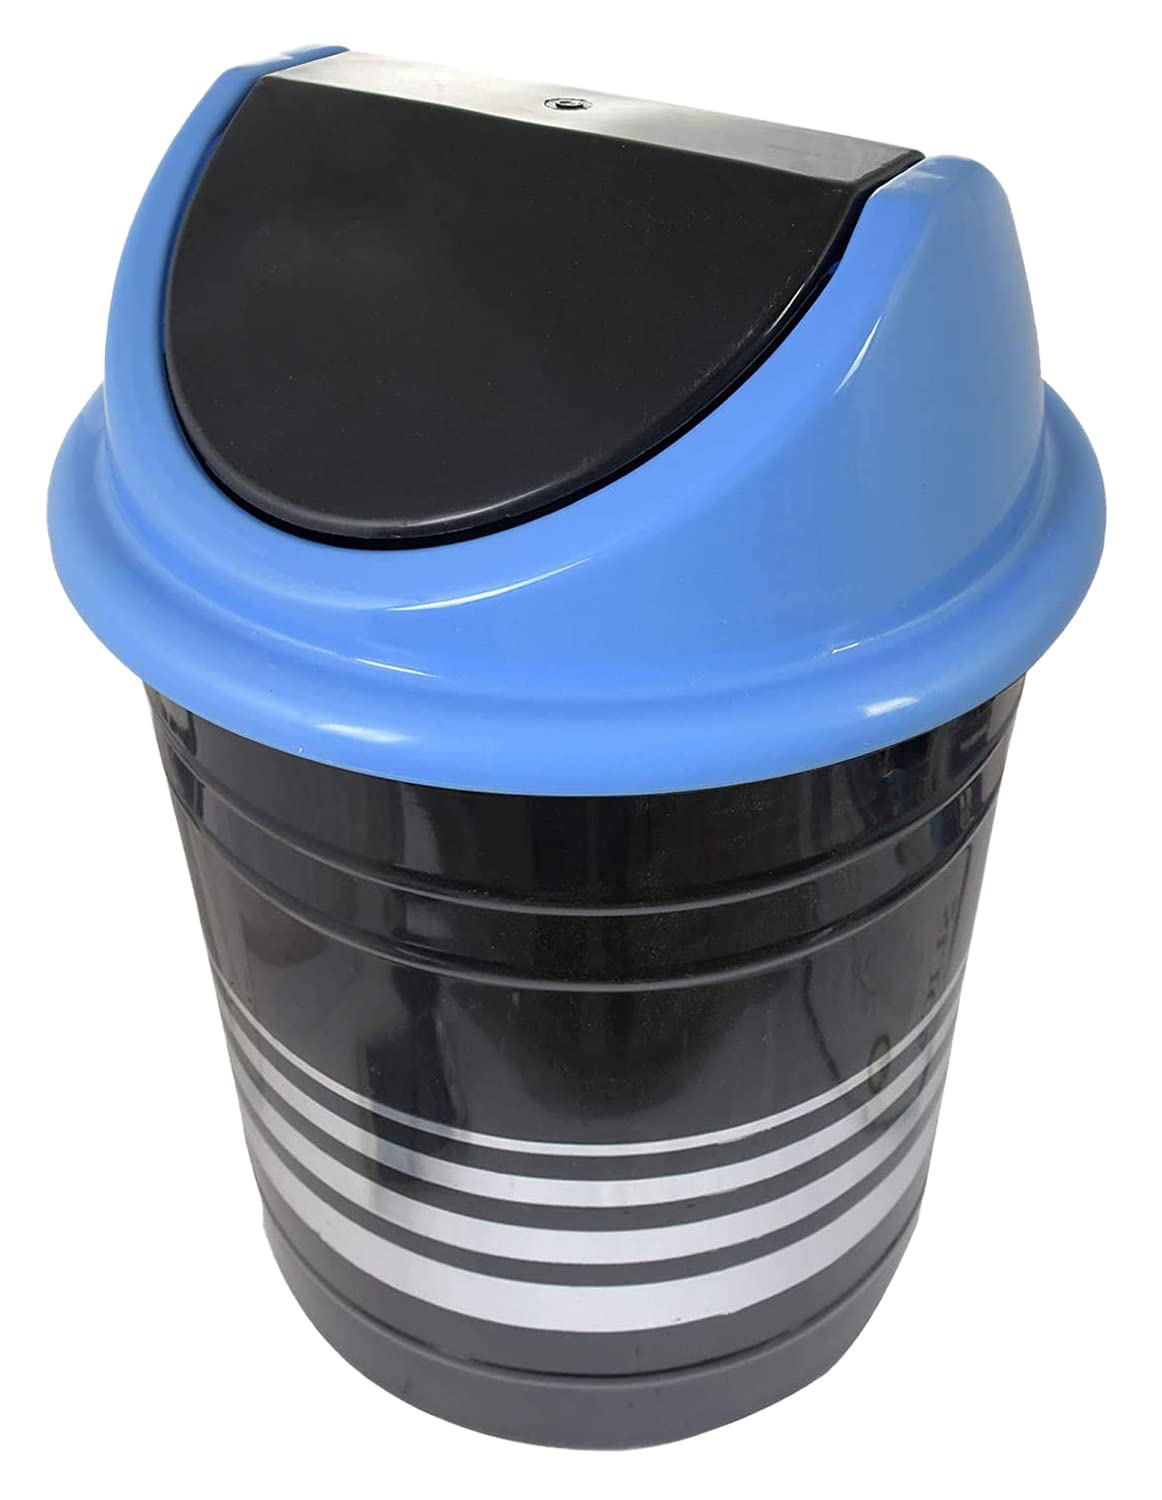 Kuber Industries Plastic DustbinWastebin With Swing Lid 10 Liter Black  Blue-47KM0887